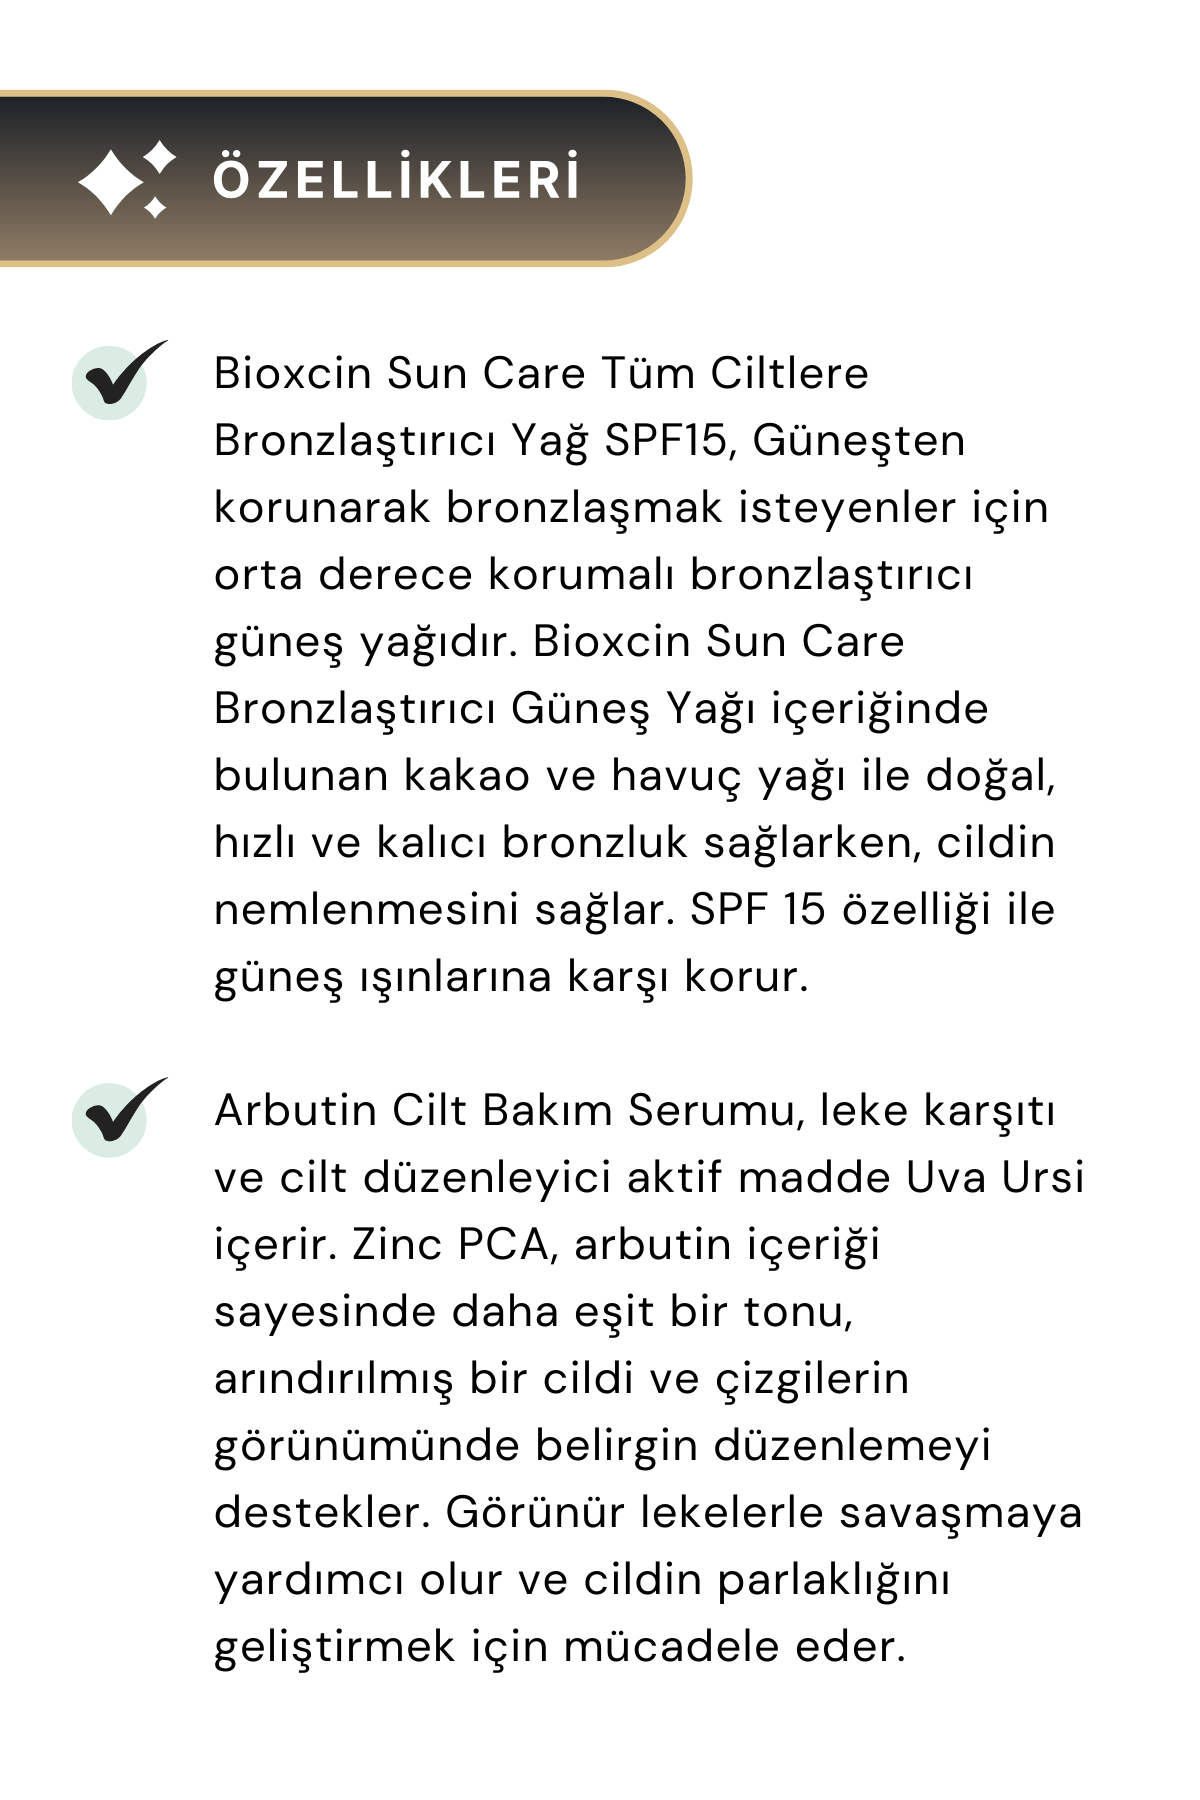 Bioxcin Sun Care Bronzlaştırıcı Yağ SPF15 200 Ml & The Fair Arbutin Leke Karşıtı Cilt Serumu 30 Ml